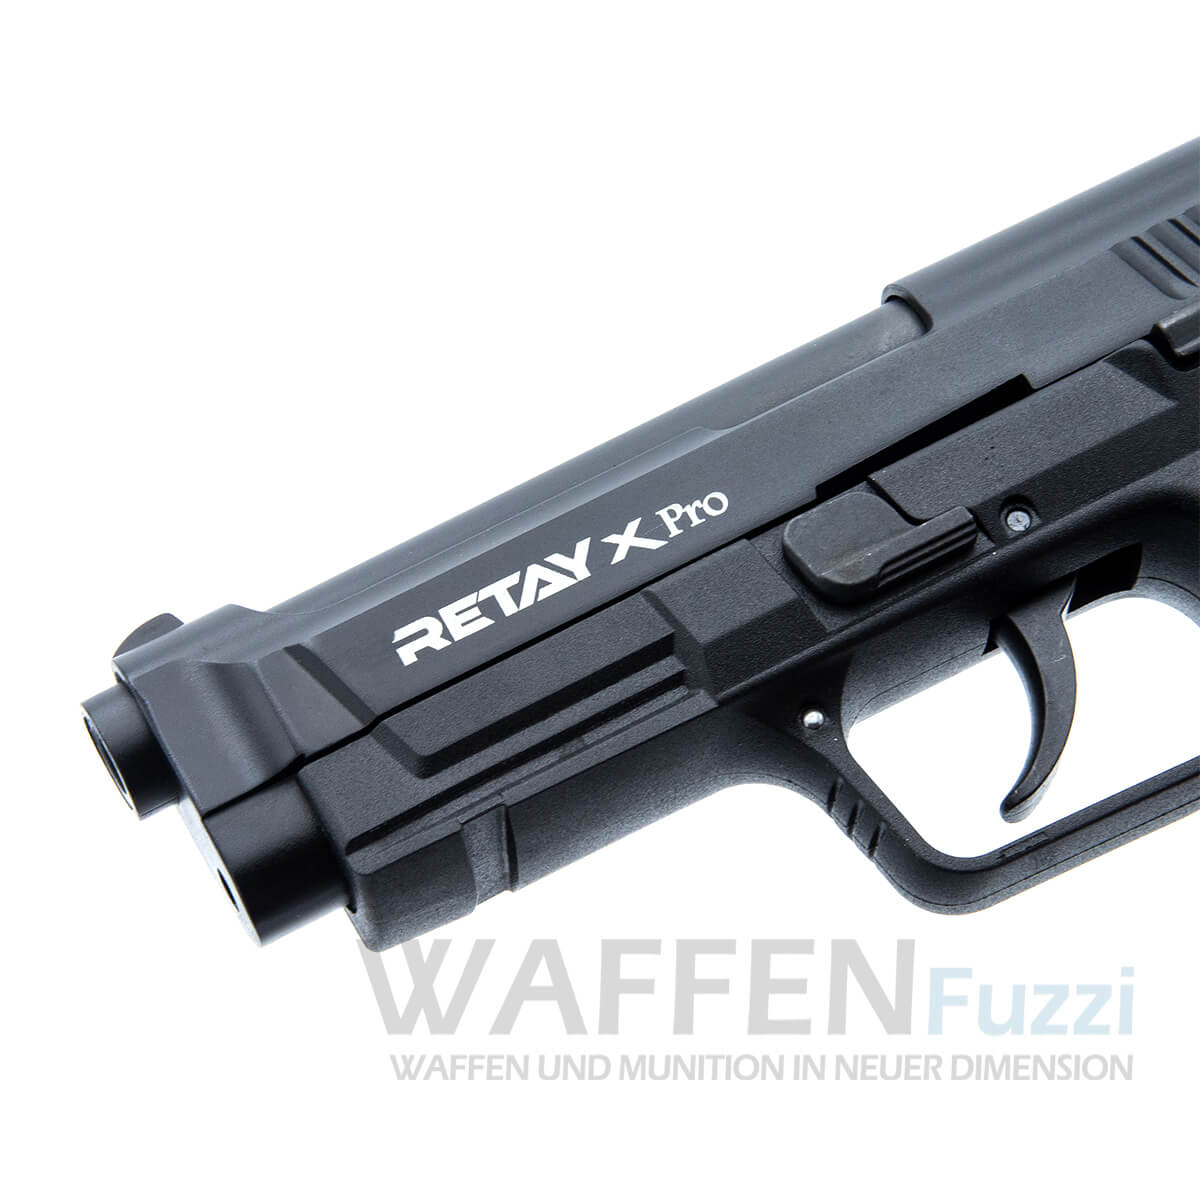 Retay X Pro Schreckschusswaffe PAK Pistole mit ergonomischem Griff 